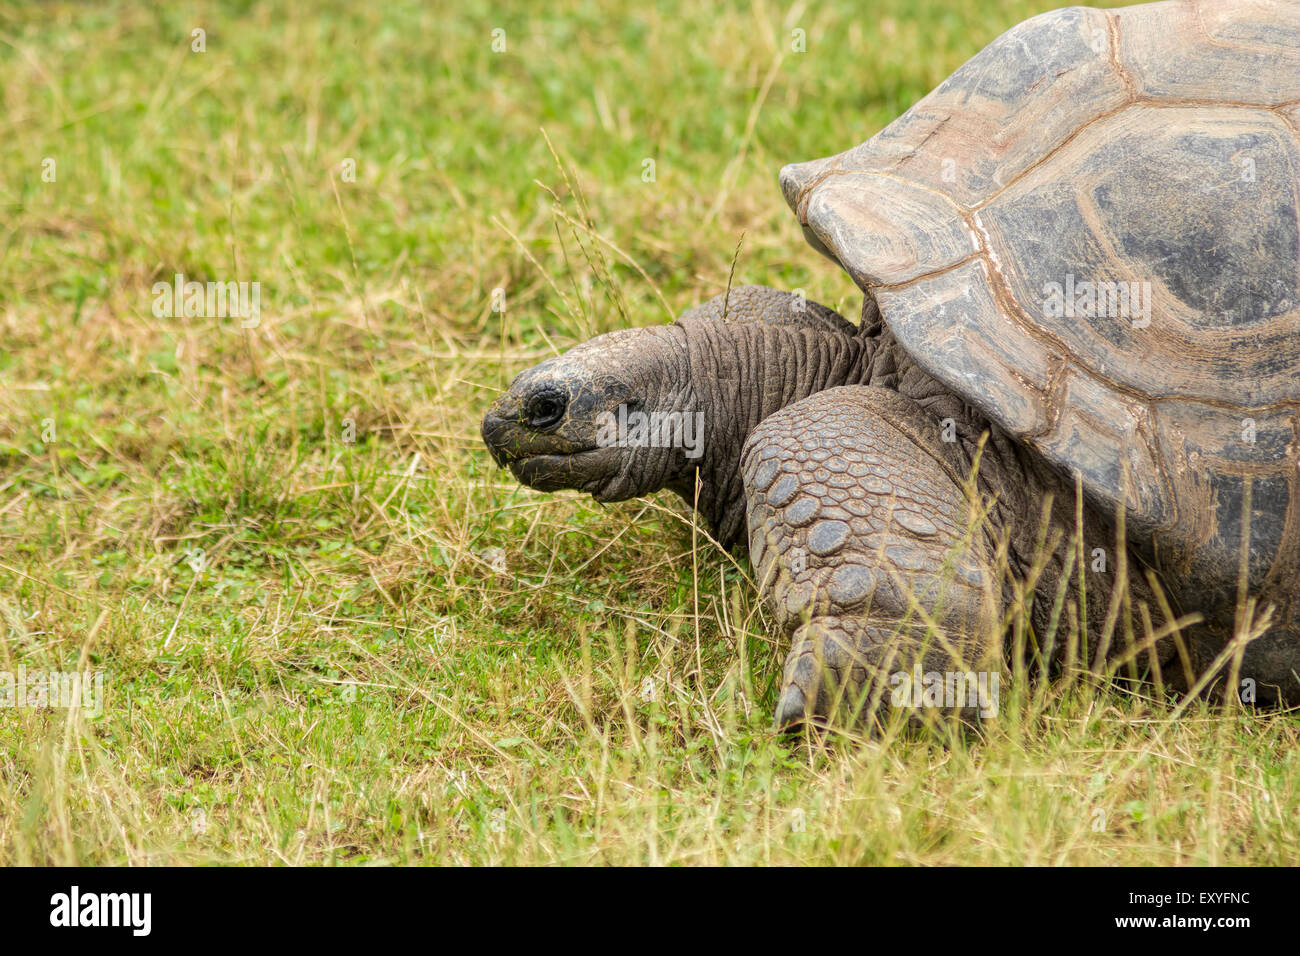 Turtoise, Dipsochelys Gigantean, bella lunga durata degli animali in pericolo di estinzione. Foto Stock